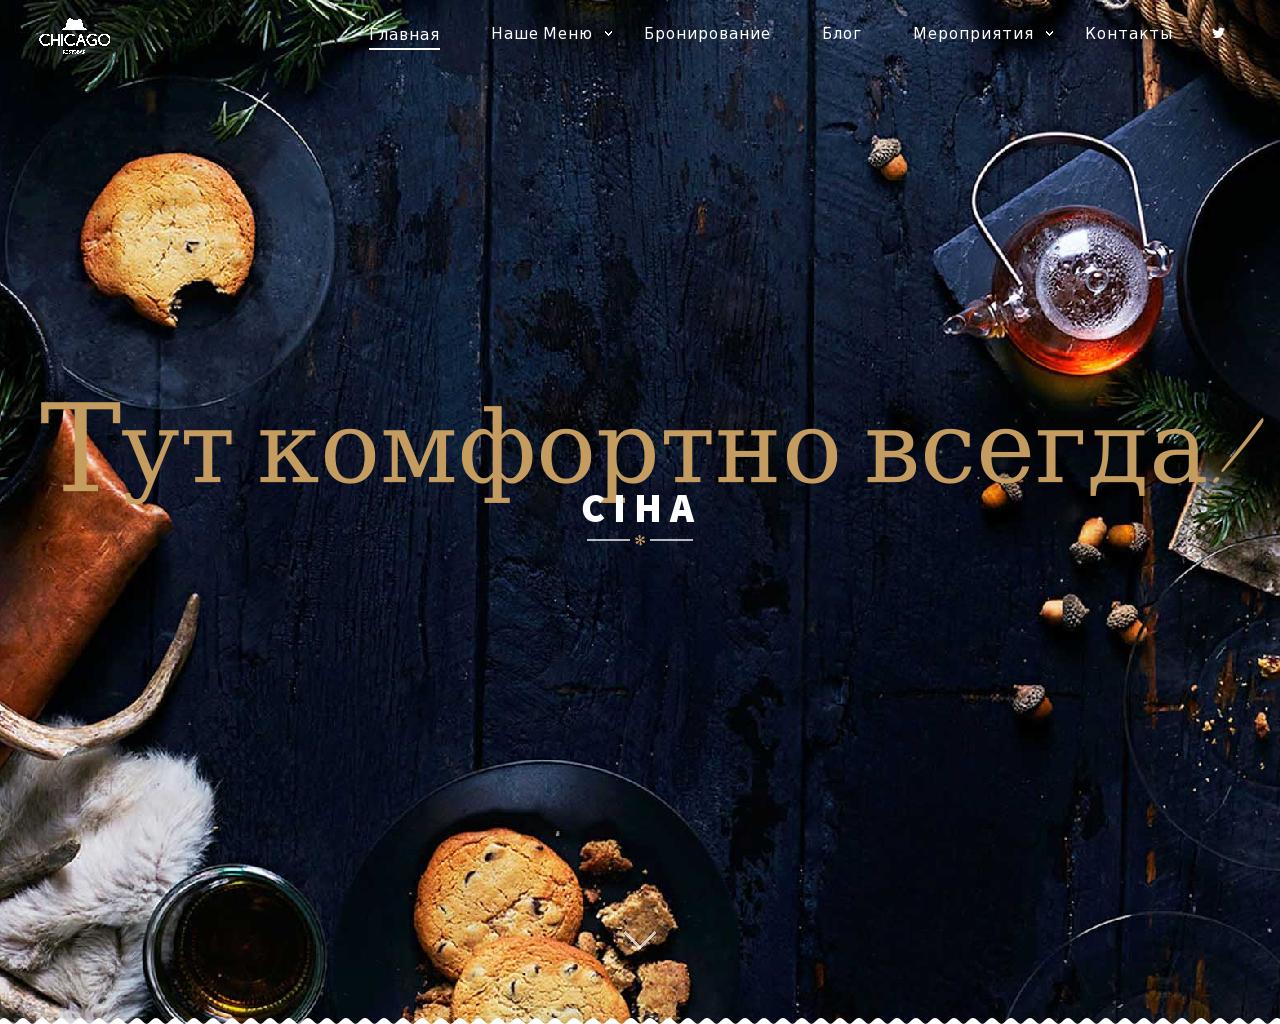 Изображение сайта ciha.ru в разрешении 1280x1024